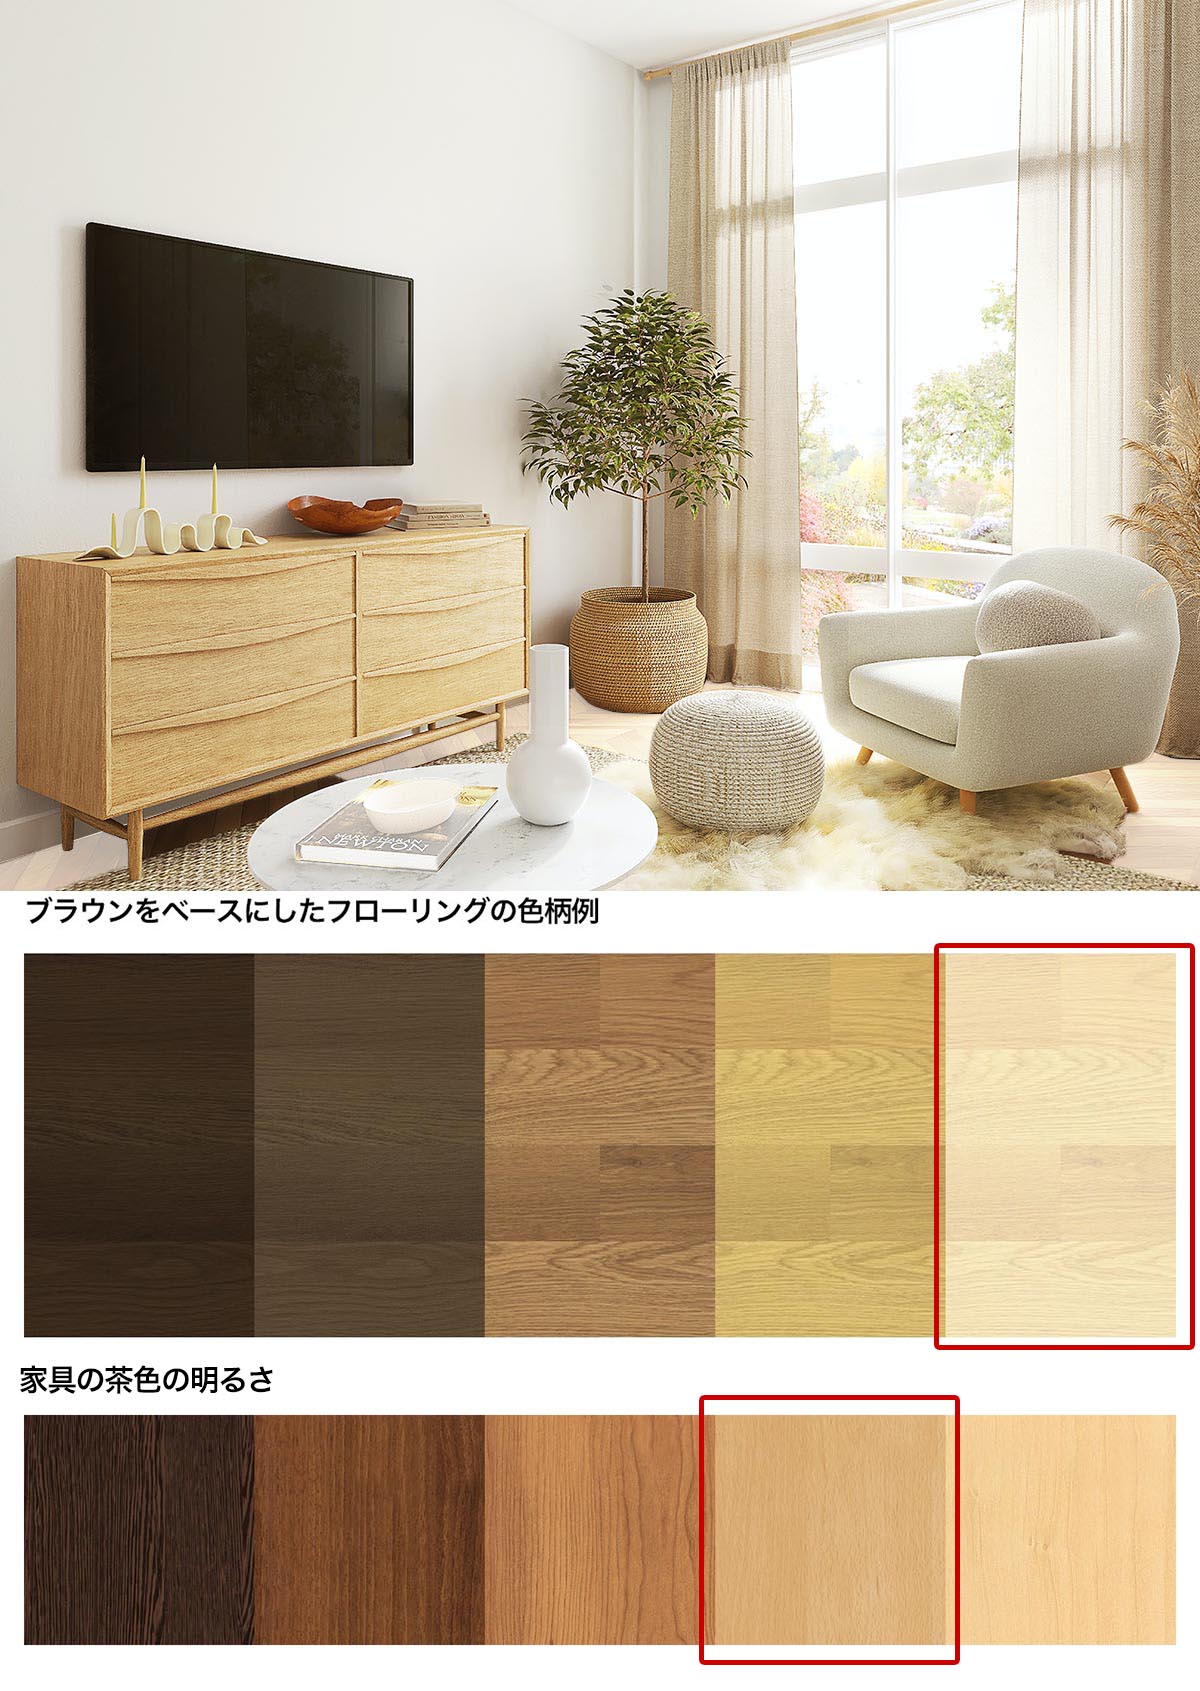 白い床と明るい茶色の家具